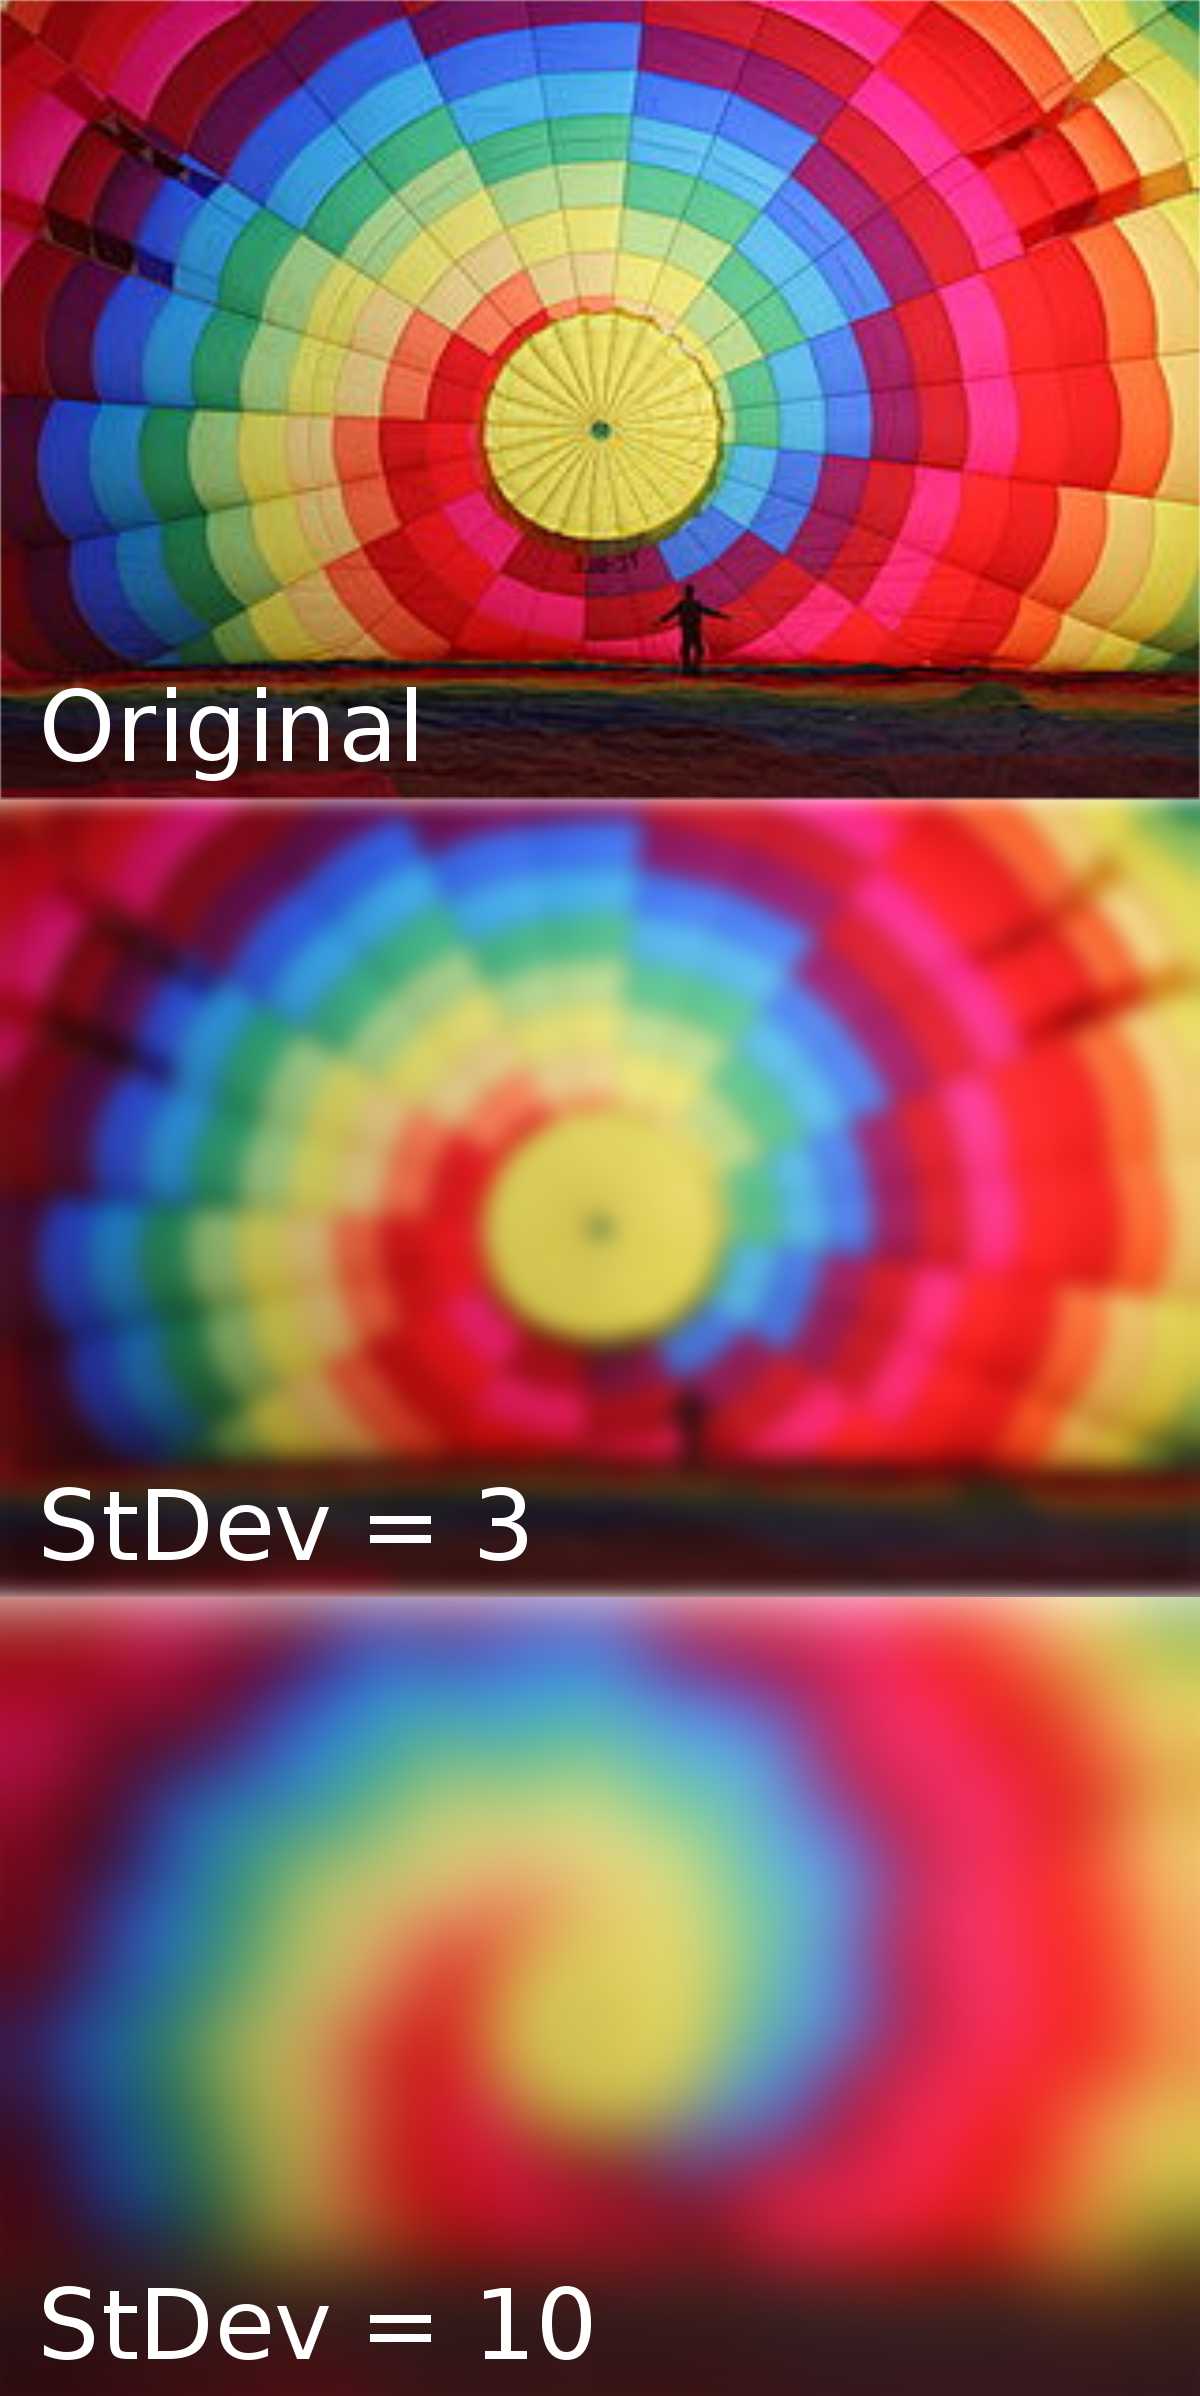 Blurred image comparison.